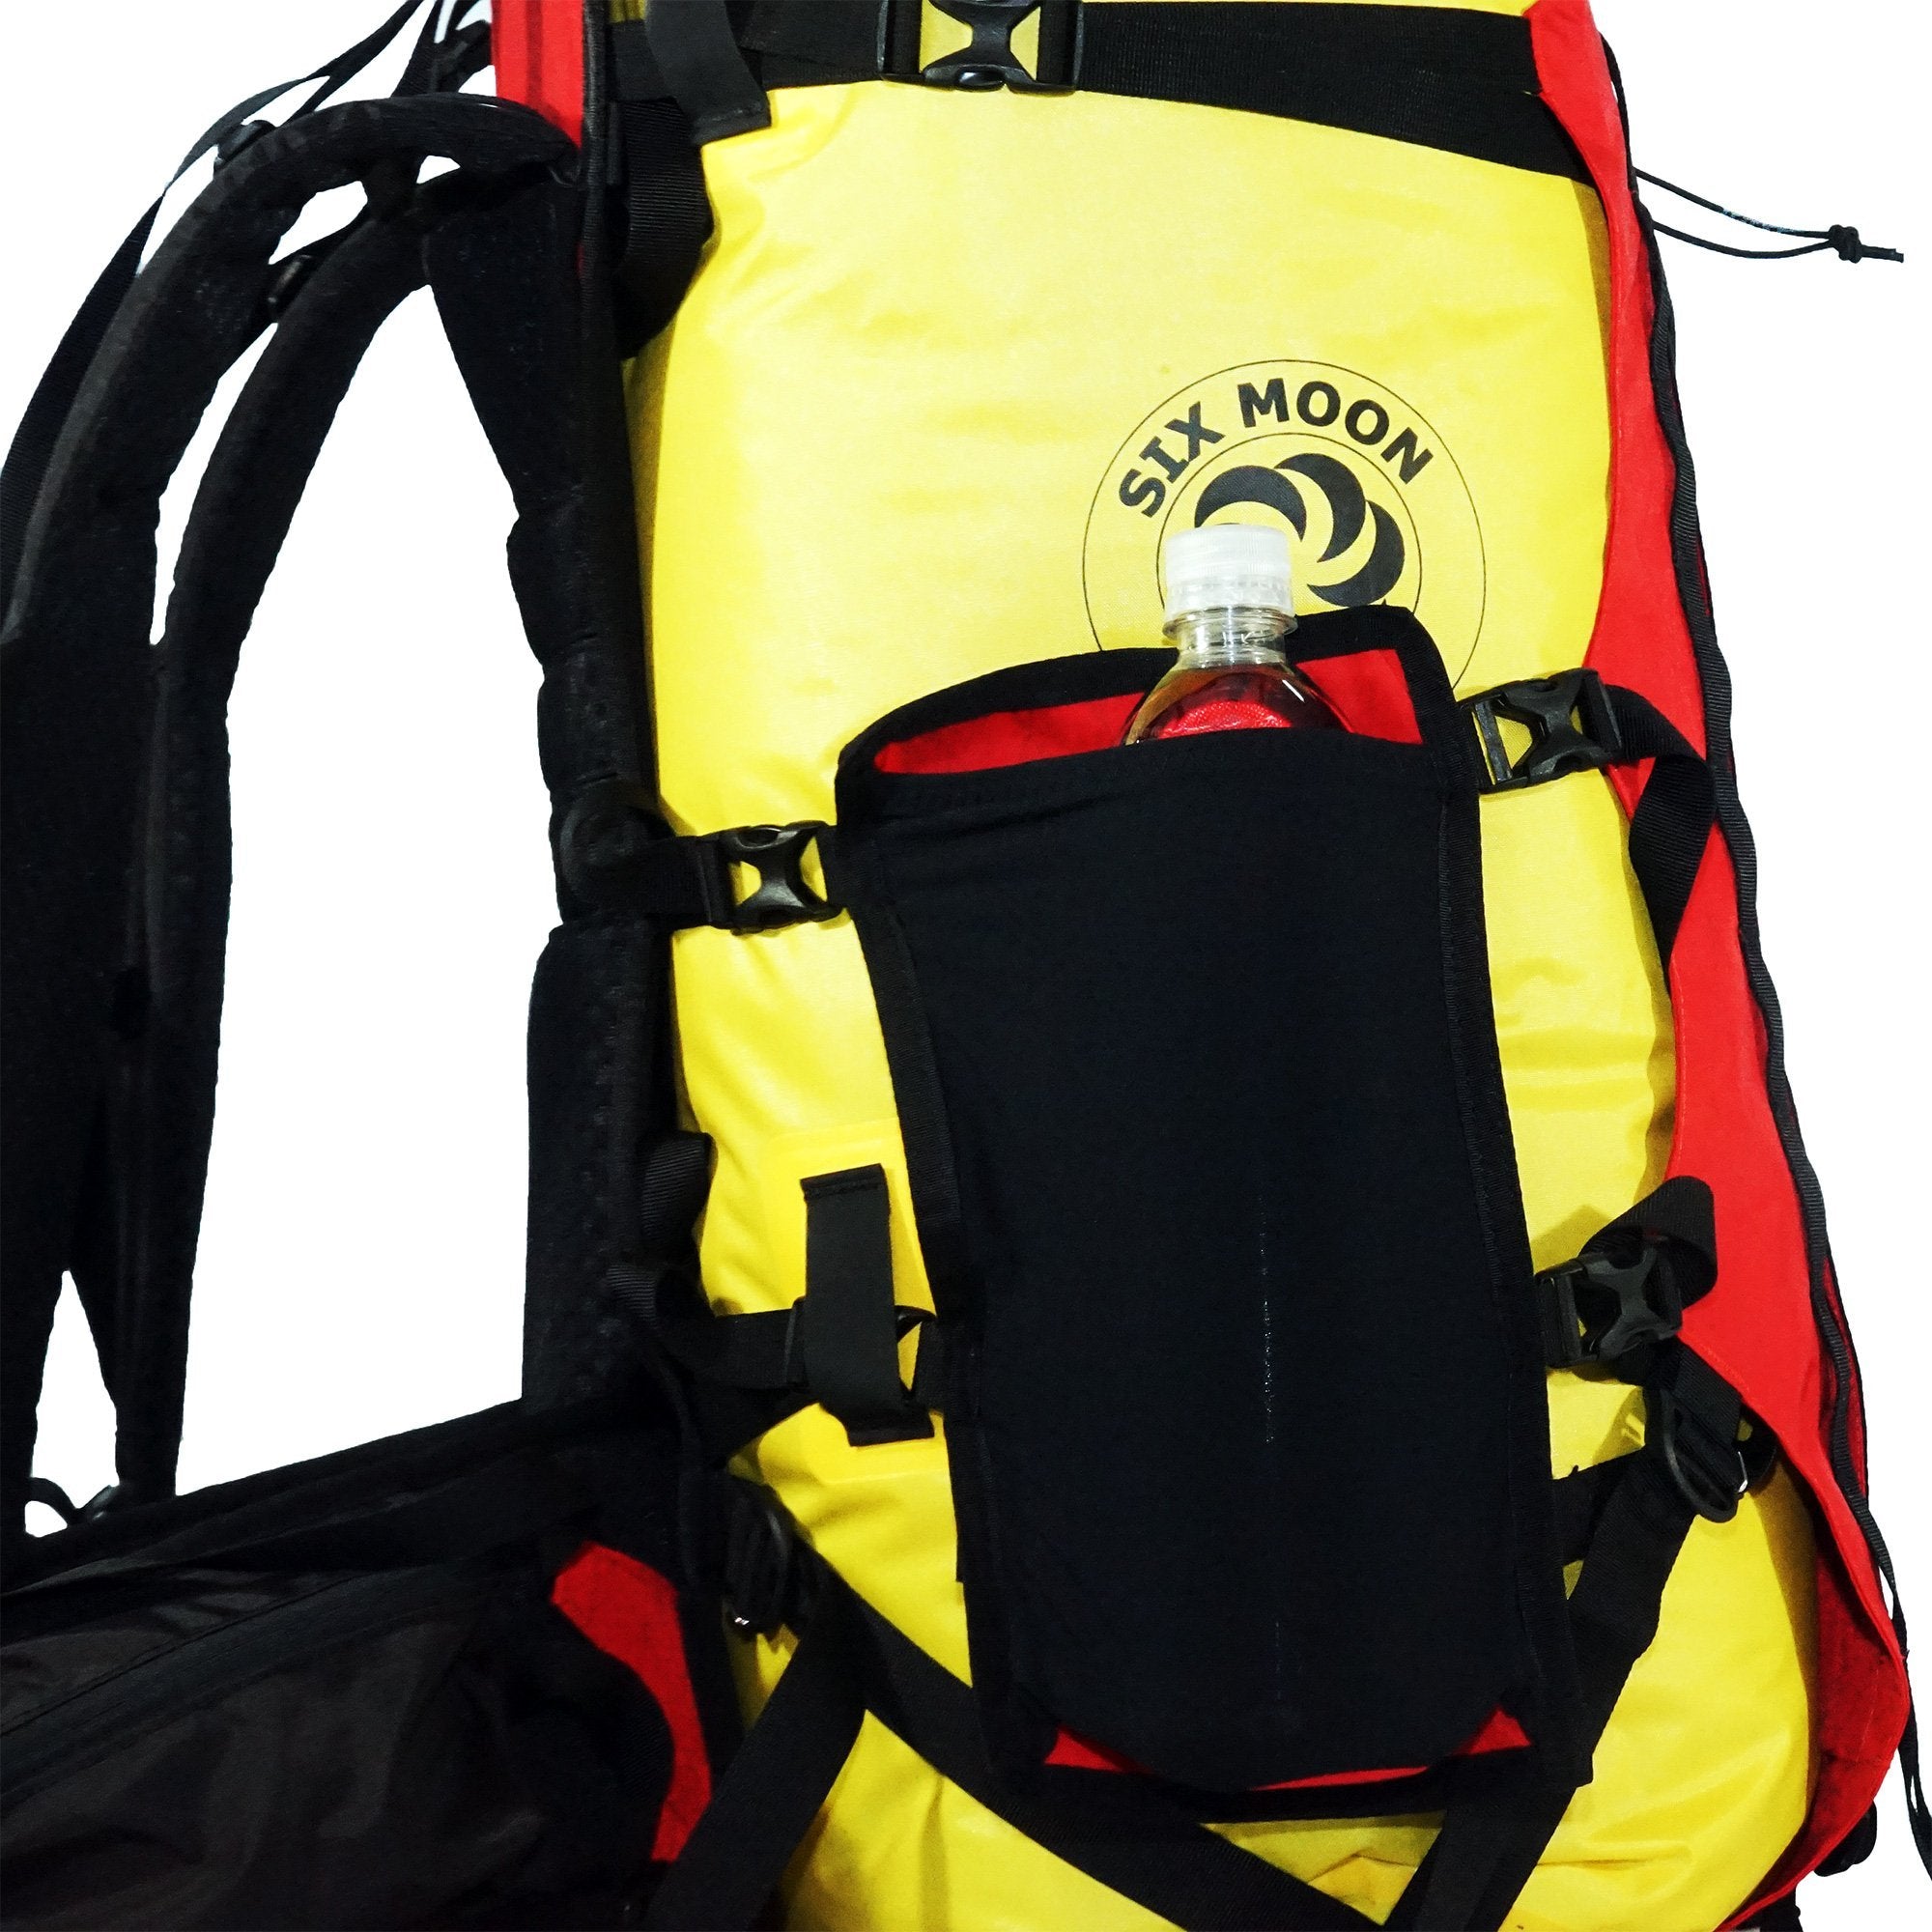 Flex PR Pack Rafting Backpack